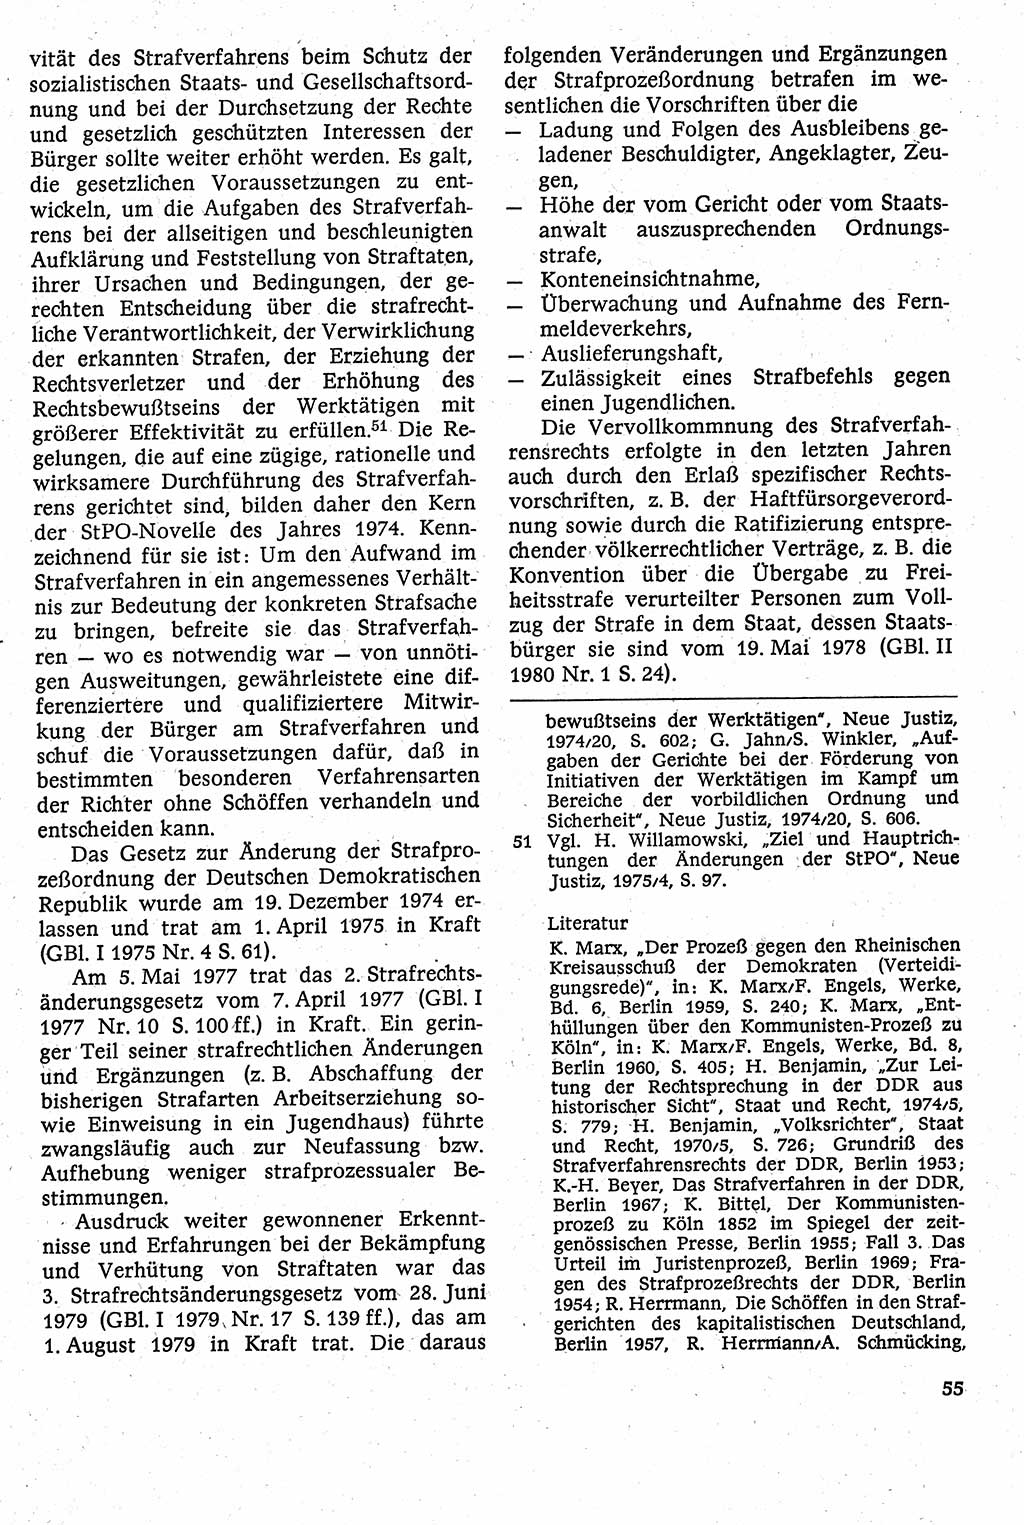 Strafverfahrensrecht [Deutsche Demokratische Republik (DDR)], Lehrbuch 1982, Seite 55 (Strafverf.-R. DDR Lb. 1982, S. 55)